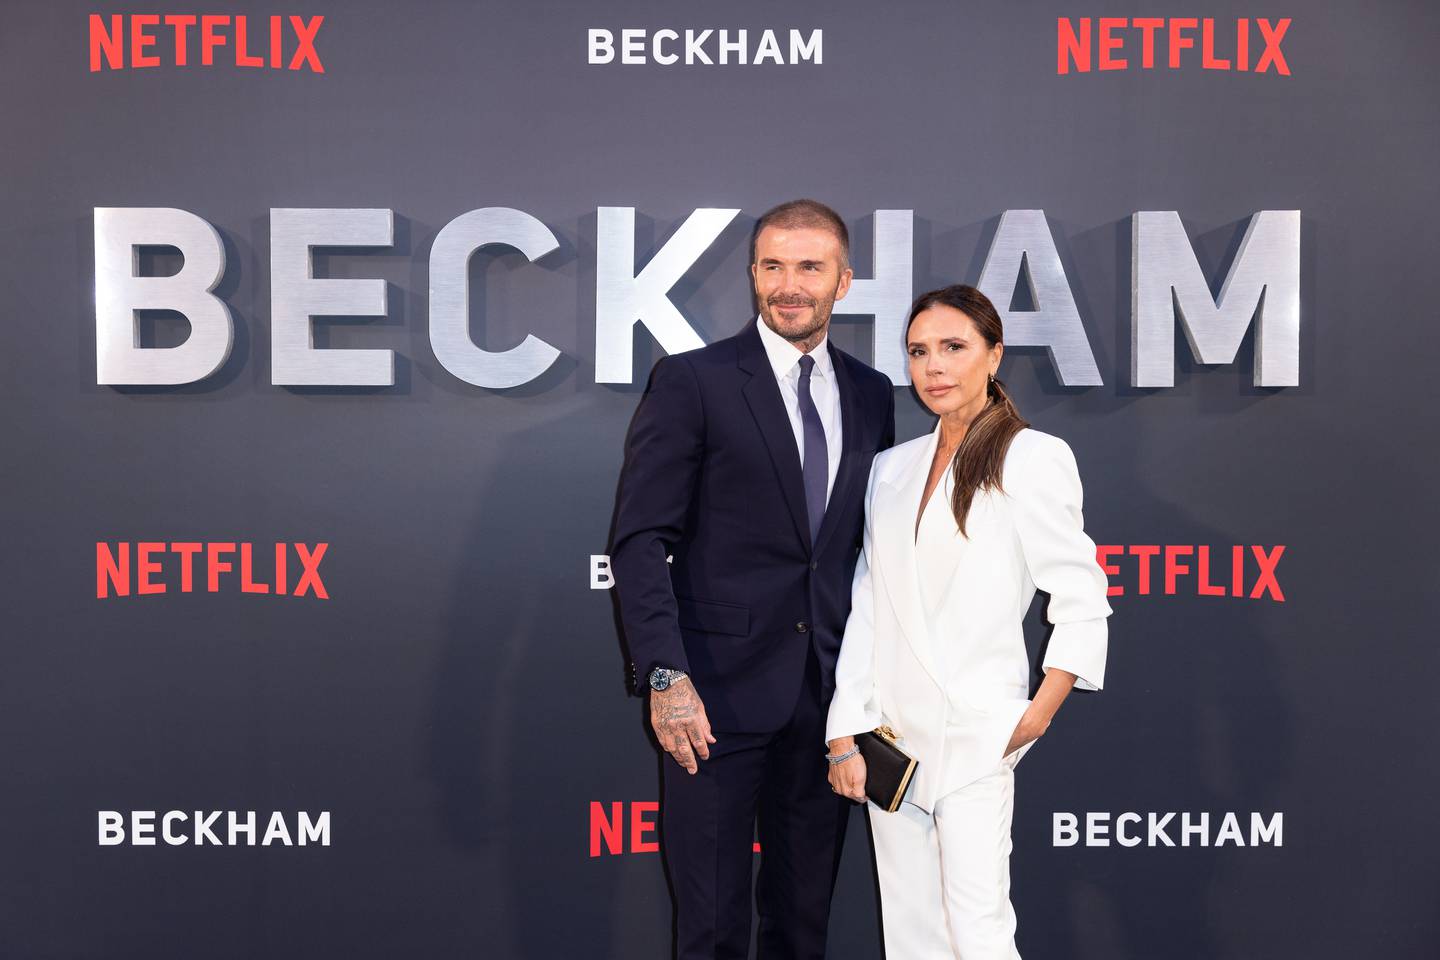 Imágenes de la serie documental 'Beckham', de Netflix, sobre la vida del exfutbolista David Beckham.